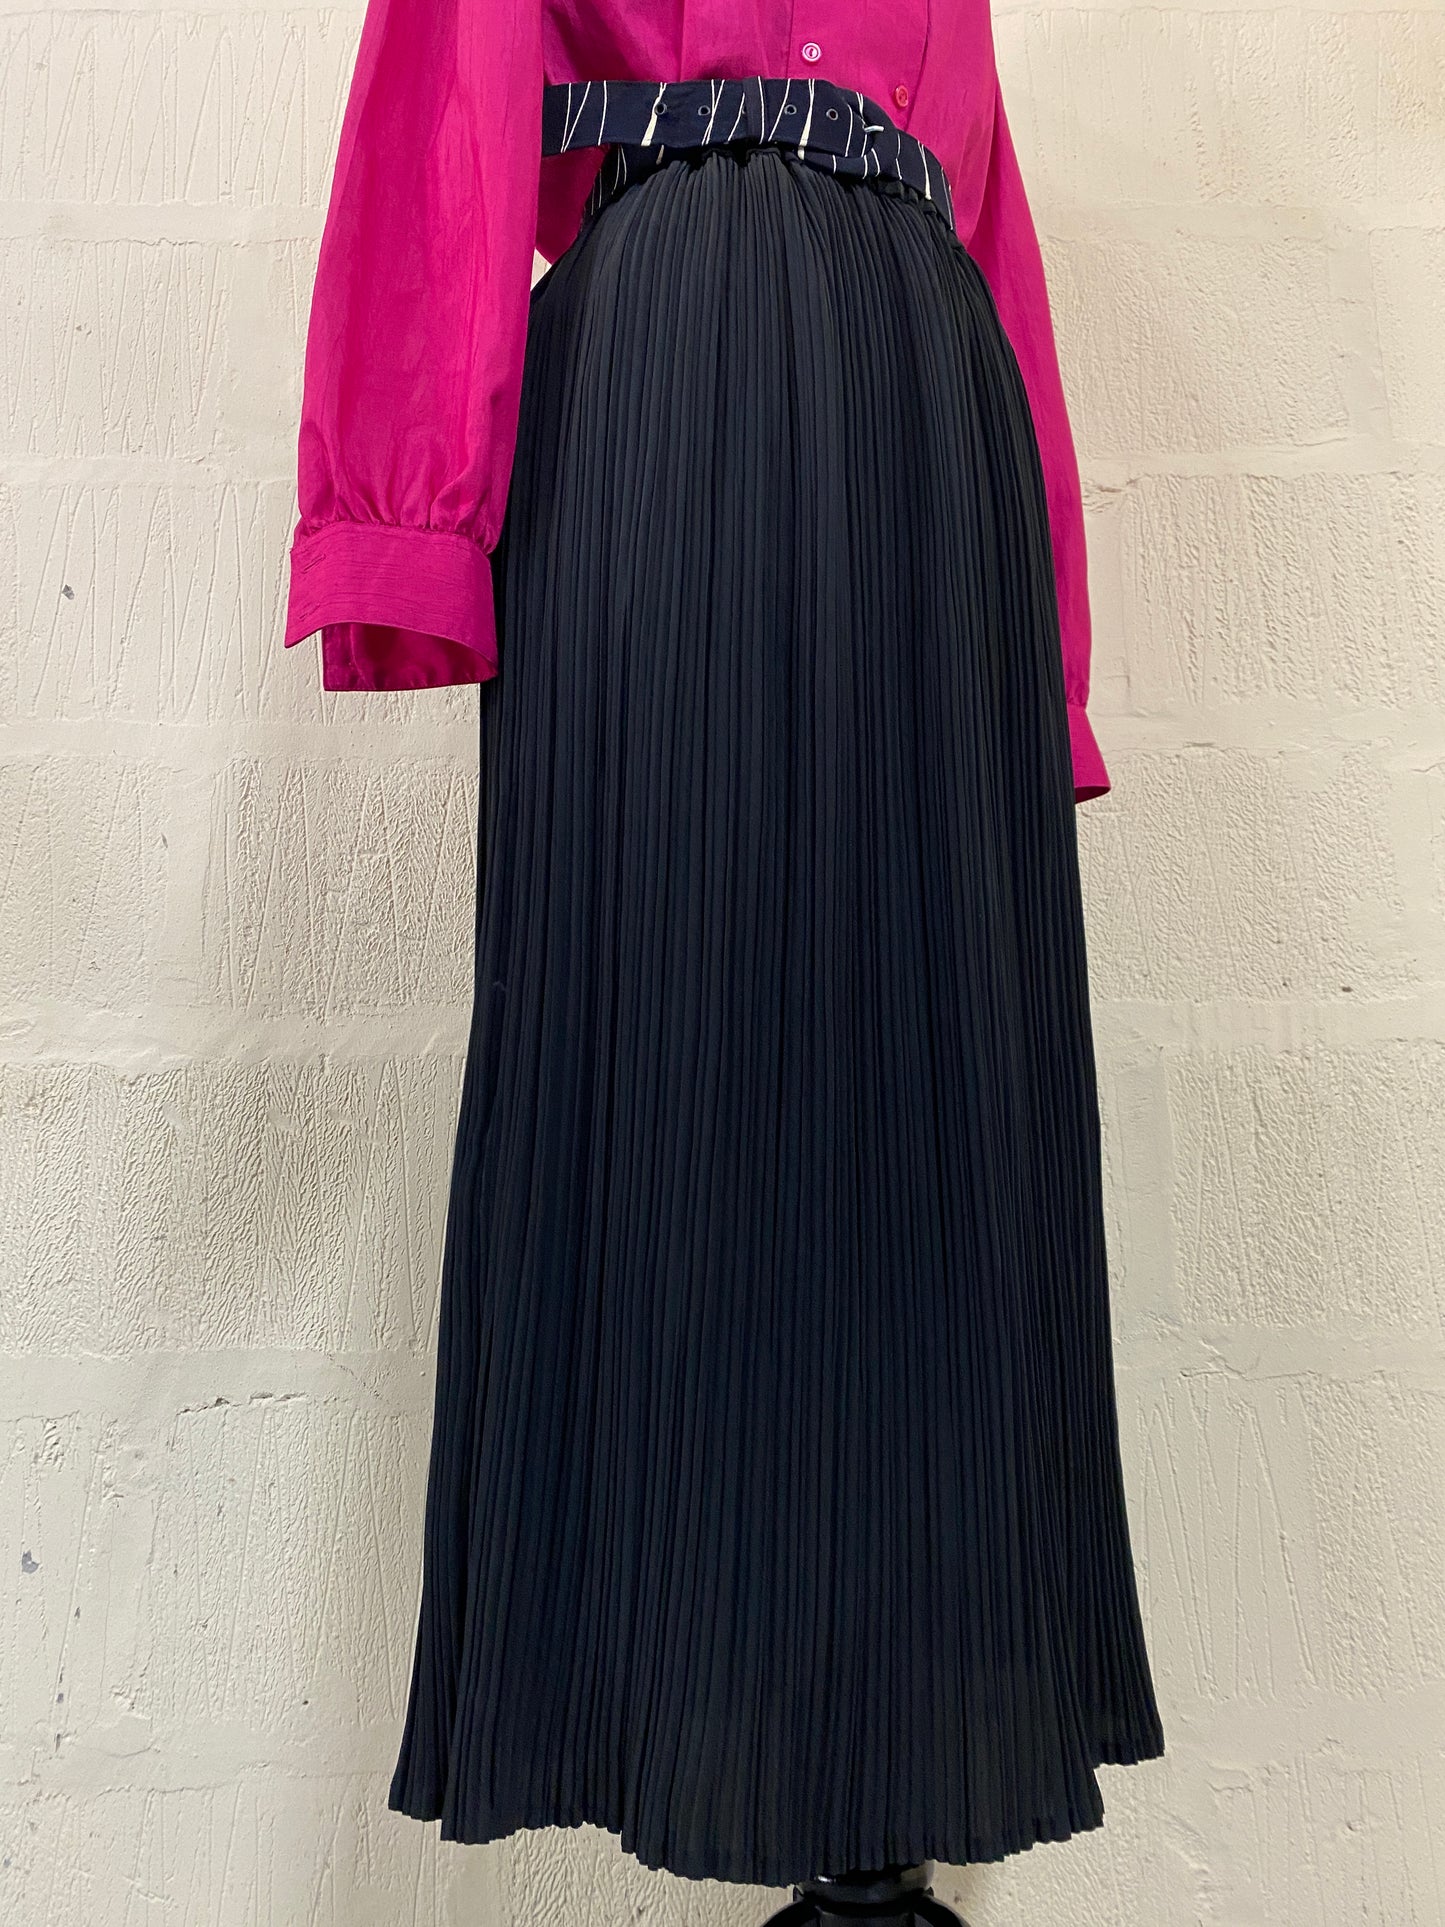 Vintage Pleated Black Skirt Size 18-20